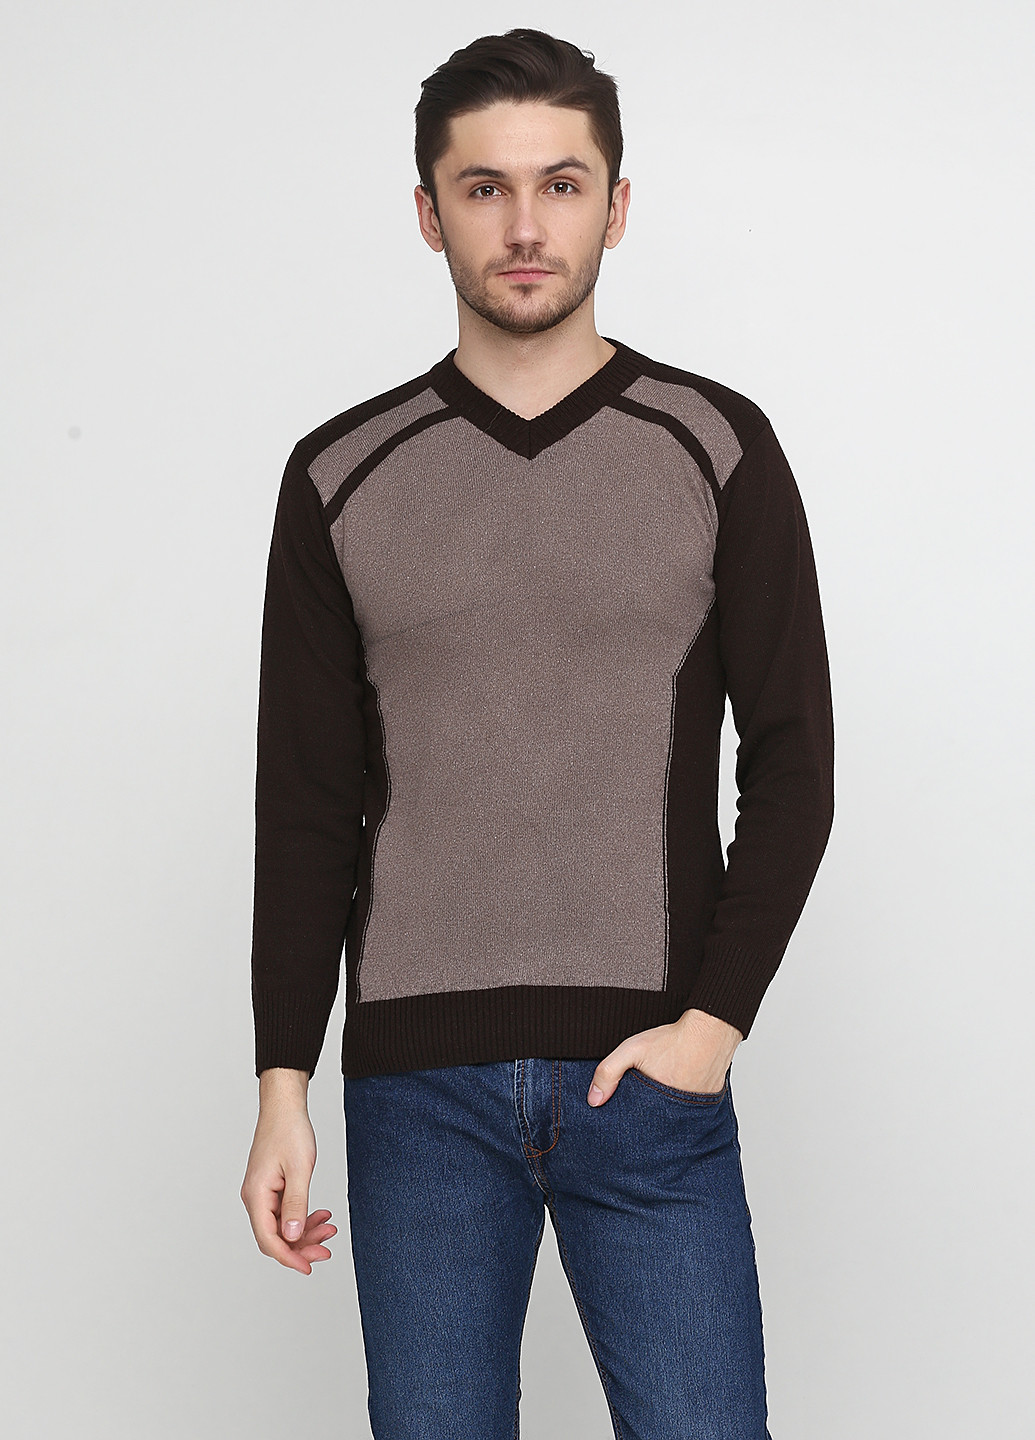 Светло-коричневый демисезонный пуловер пуловер Enbiya